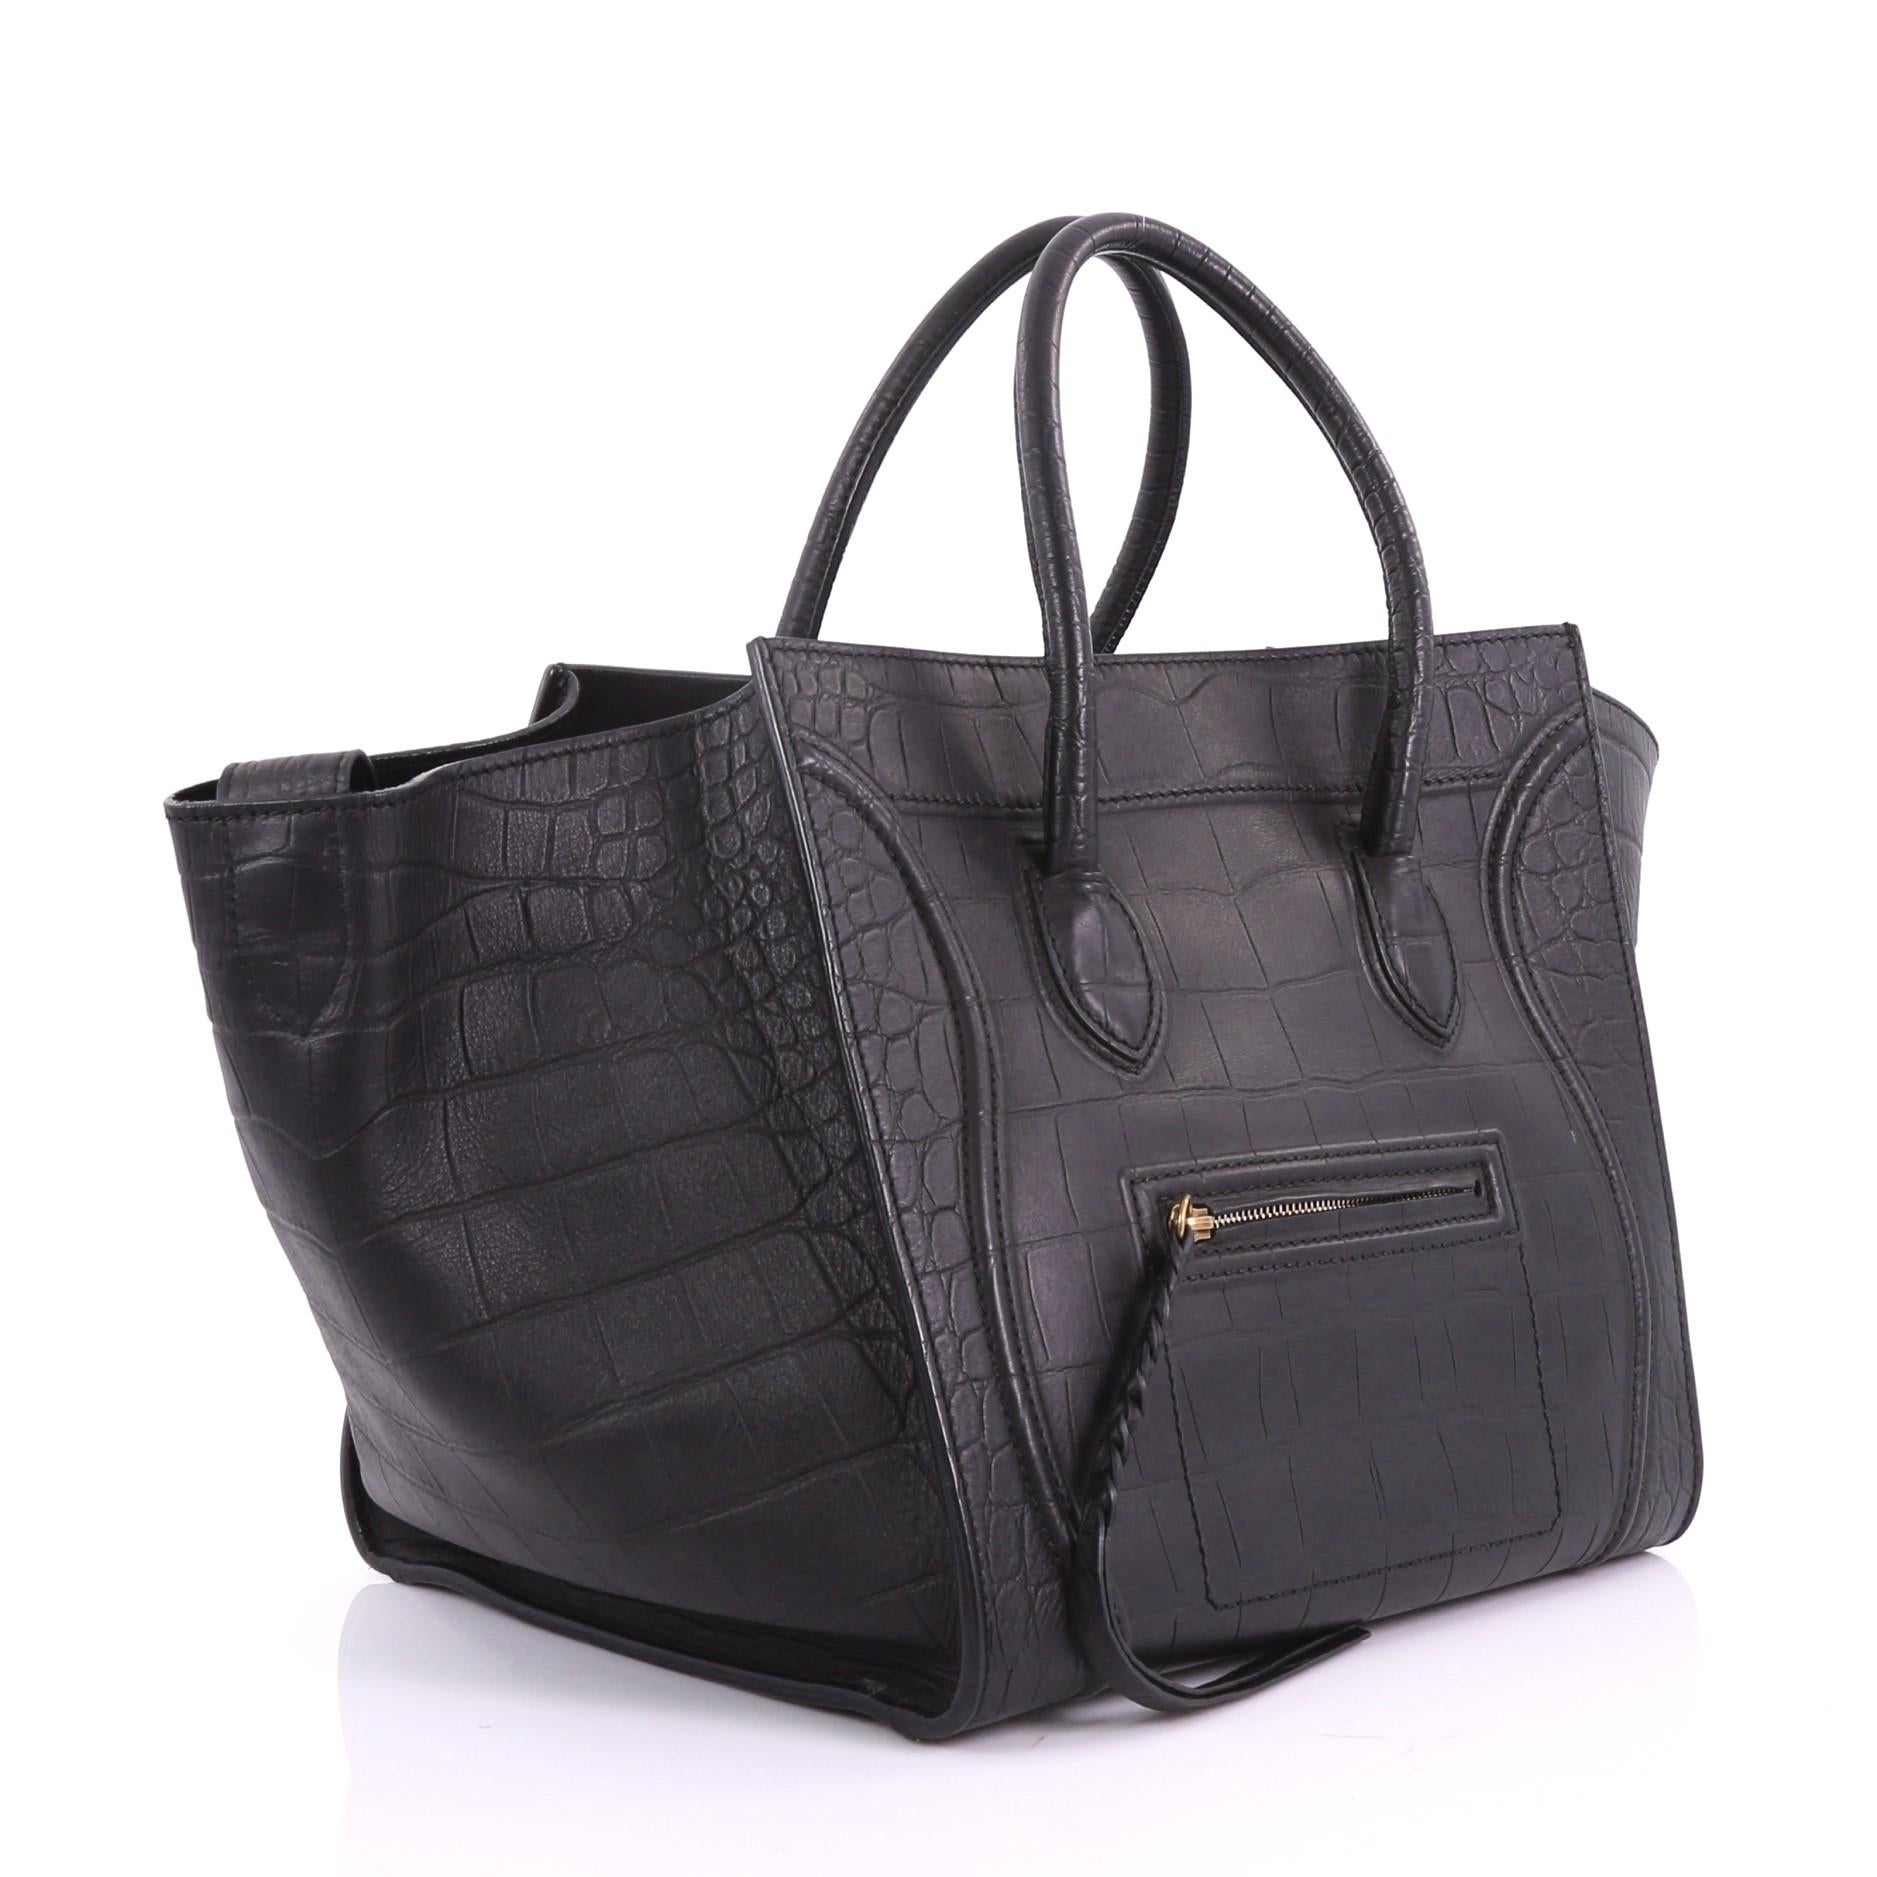 Black Celine Phantom Handbag Crocodile Embossed Leather Medium